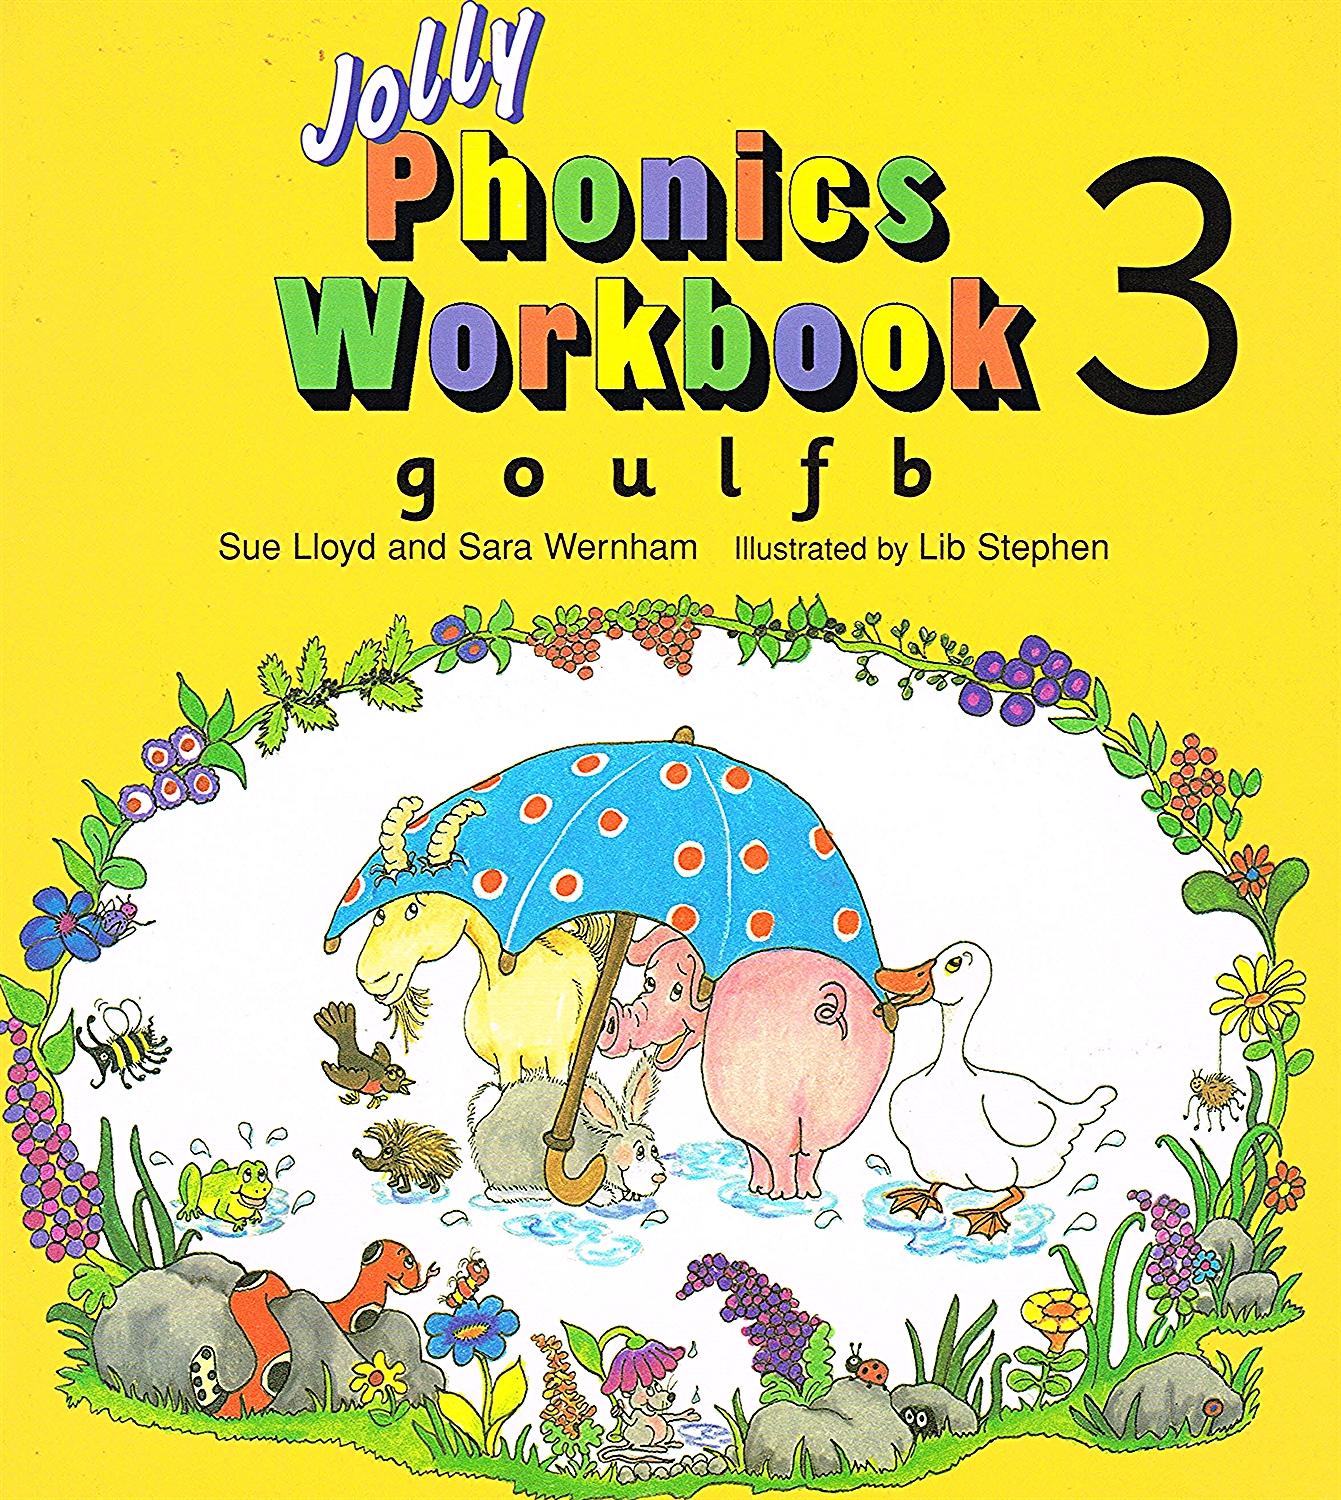 Jolly Phonics Workbook 3 G O U L F B By Susan Lloyd And Sara